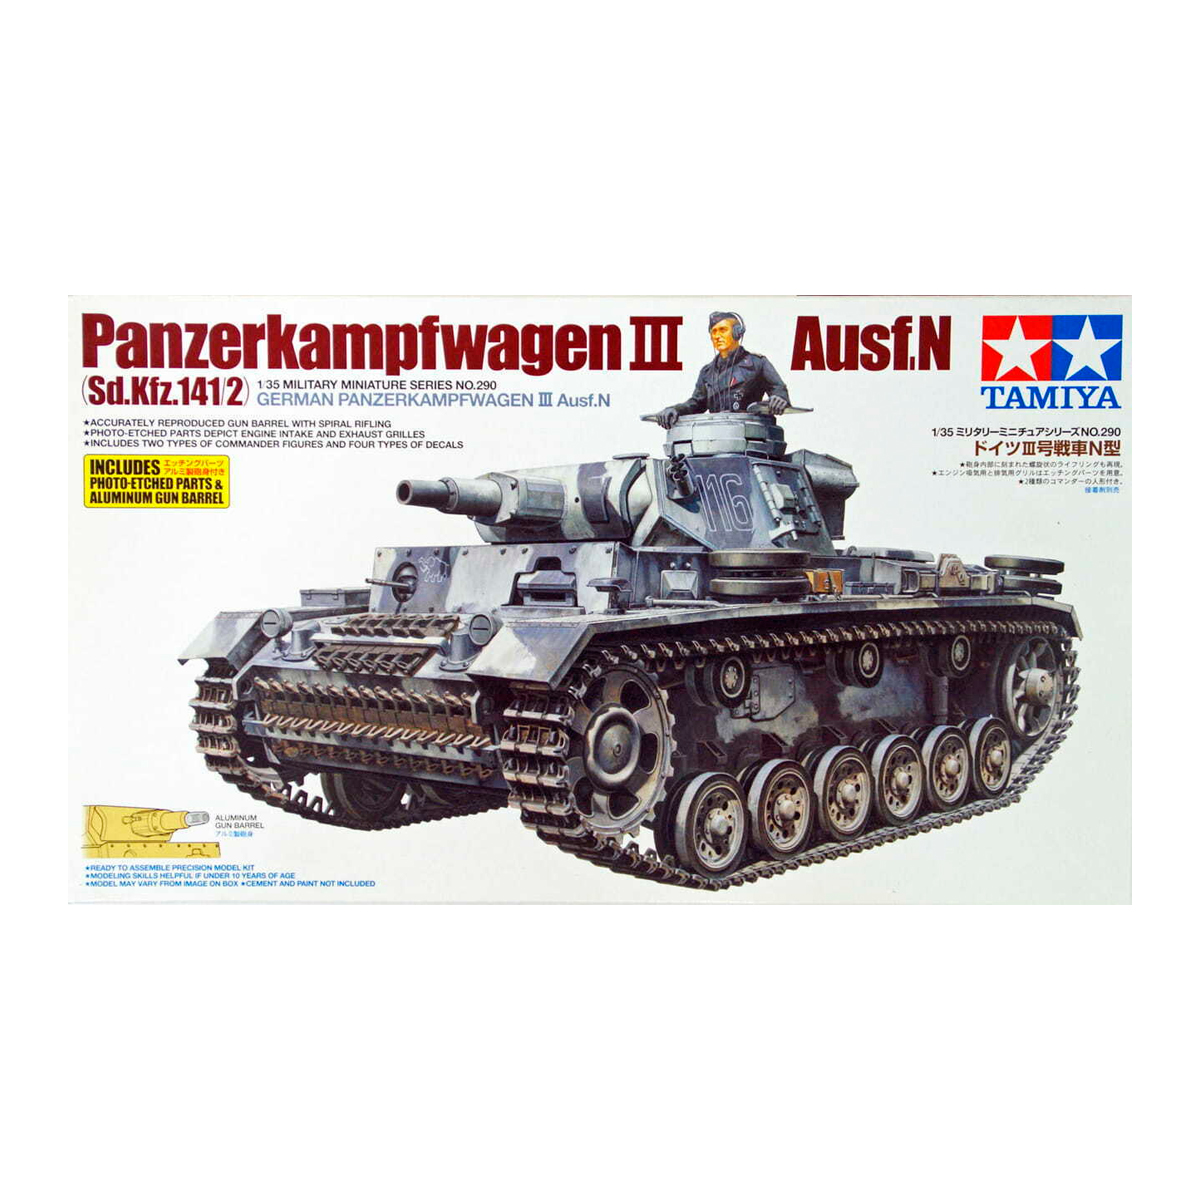 1/35 Pz.Kpfw.III Ausf.N